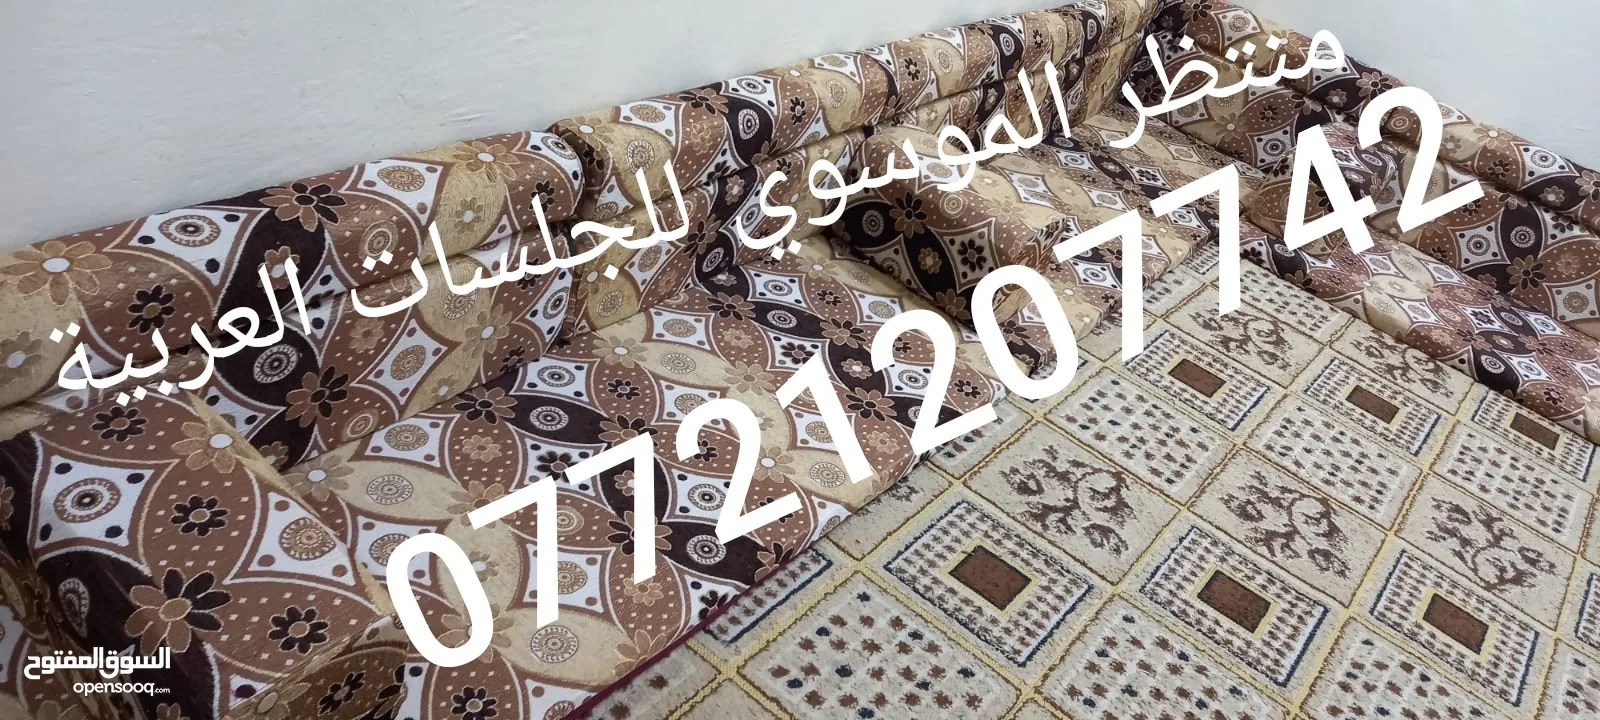 لشهر محرم تم تخفيض السعر الزبائن الكرام ..  .. .. كعدة عربية كويتي جديد ارتفاع ضهر 50سم  منادر 12 م